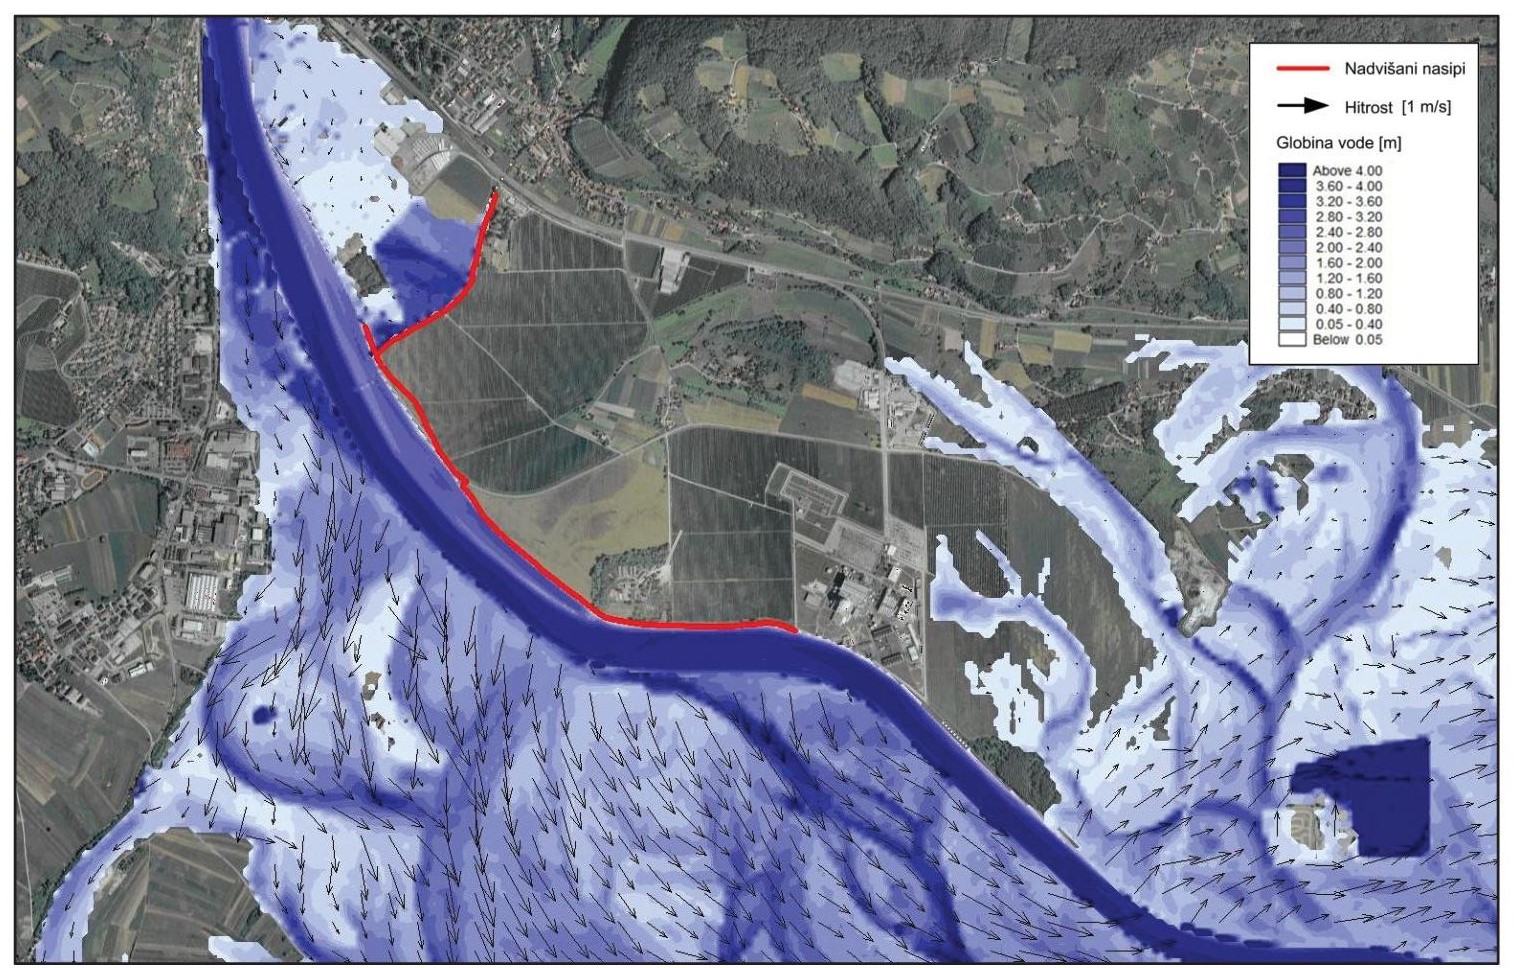 Prikaz razlivanja vode ob največji možni poplavi reke Save – situacija po zvišanju nasipov leta 2012. Rdeča črta prikazuje nasip, ki je bil zvišan tega leta.